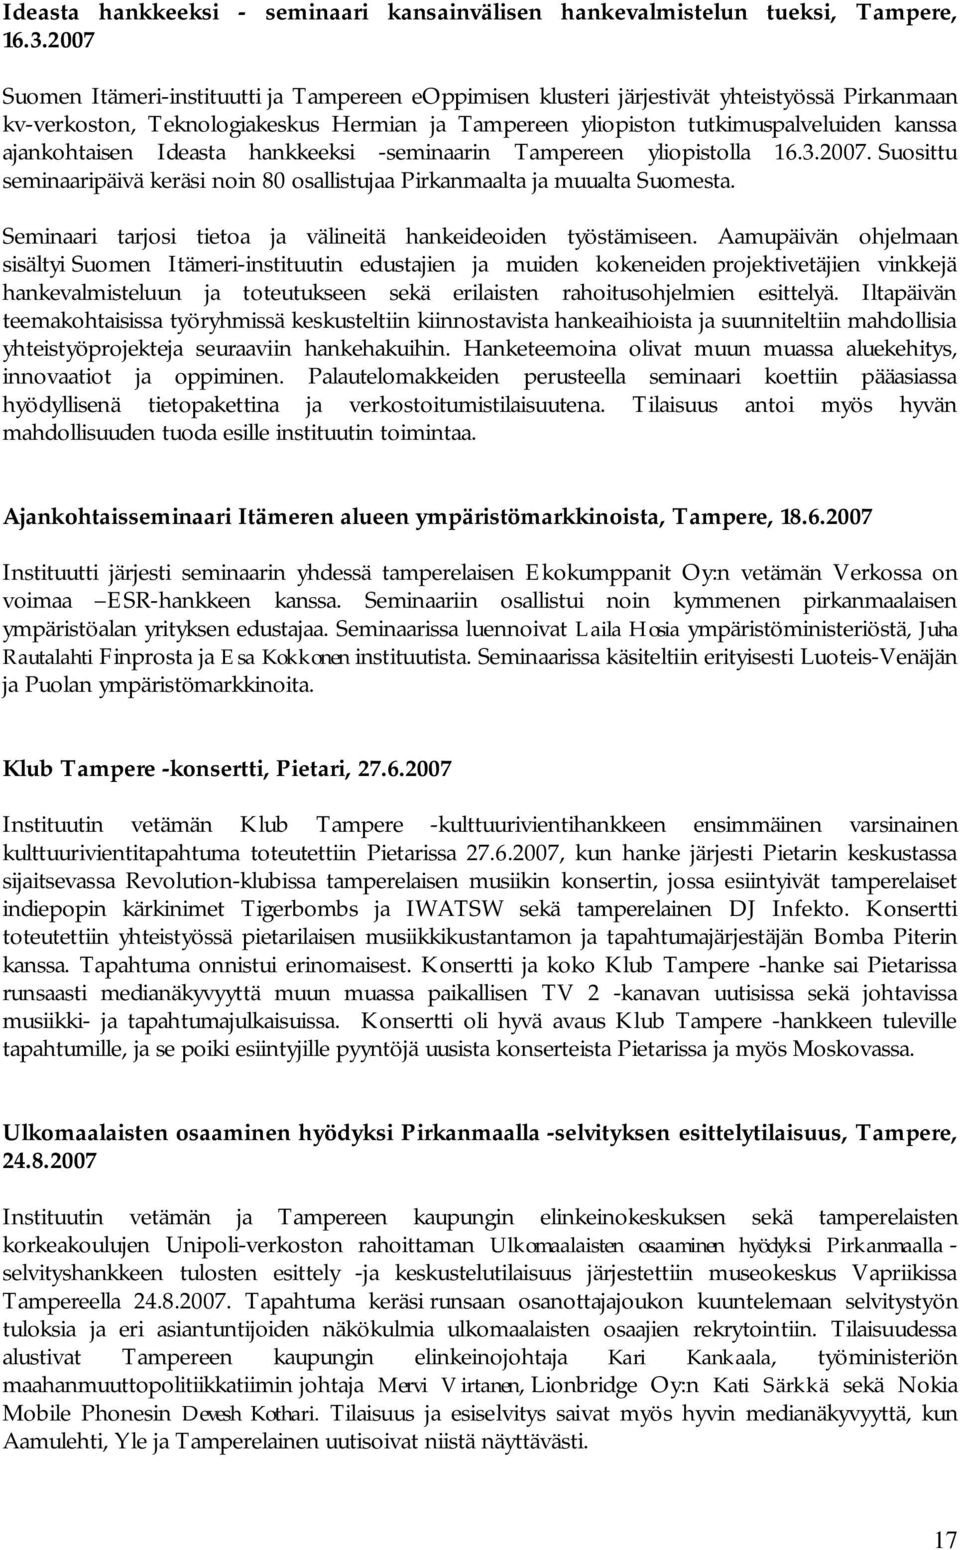 ajankohtaisen Ideasta hankkeeksi -seminaarin Tampereen yliopistolla 16.3.2007. Suosittu seminaaripäivä keräsi noin 80 osallistujaa Pirkanmaalta ja muualta Suomesta.